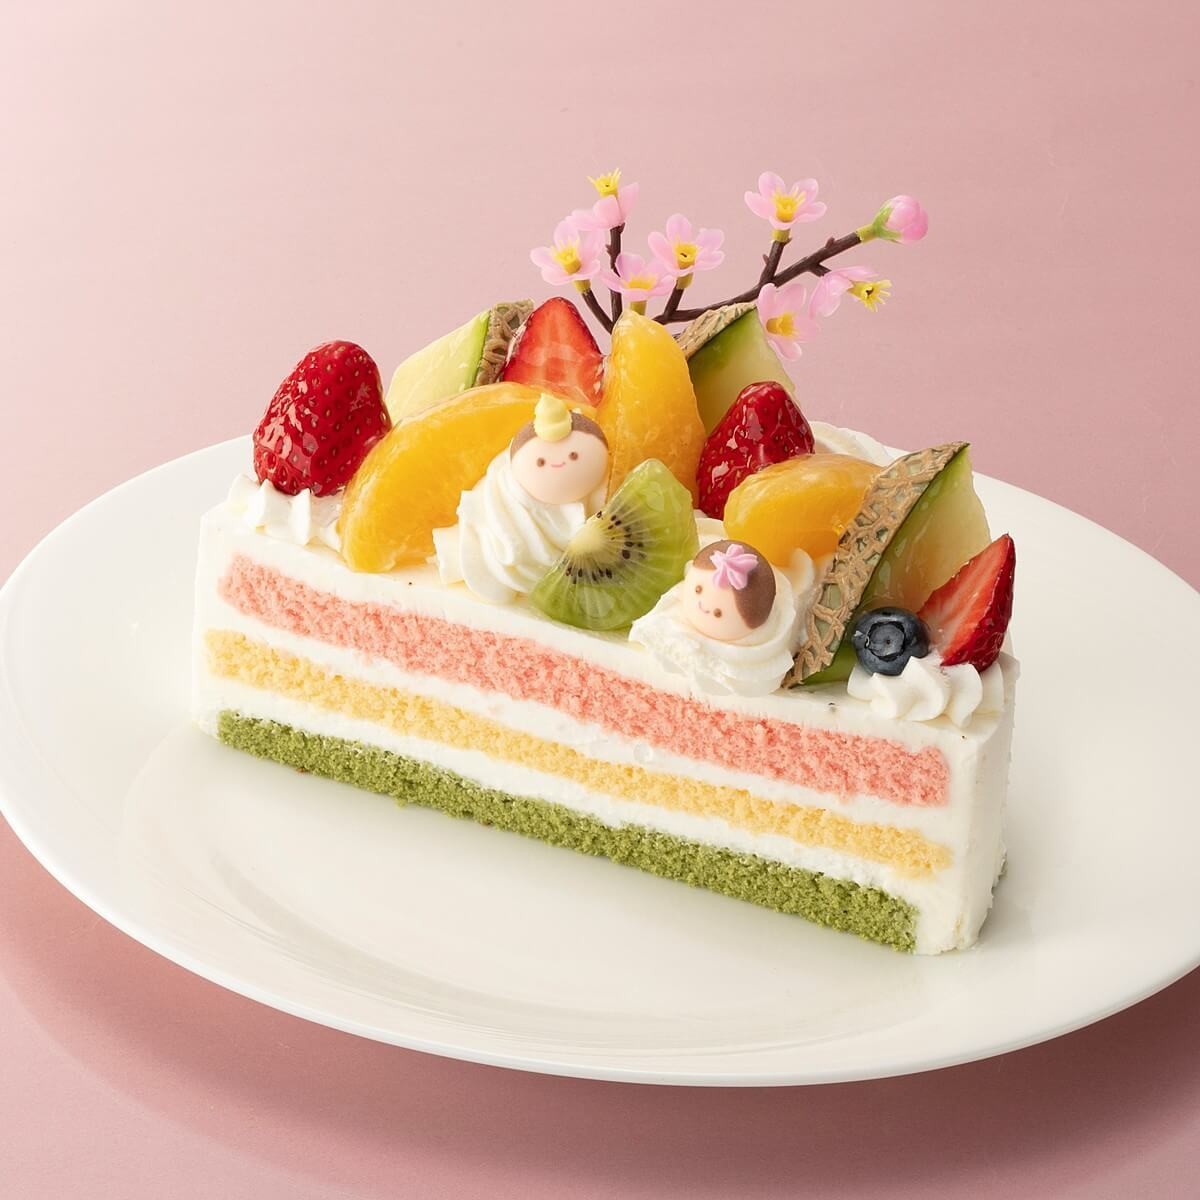 シャトレーゼの 180円ショートケーキ は3月3日までの期間限定